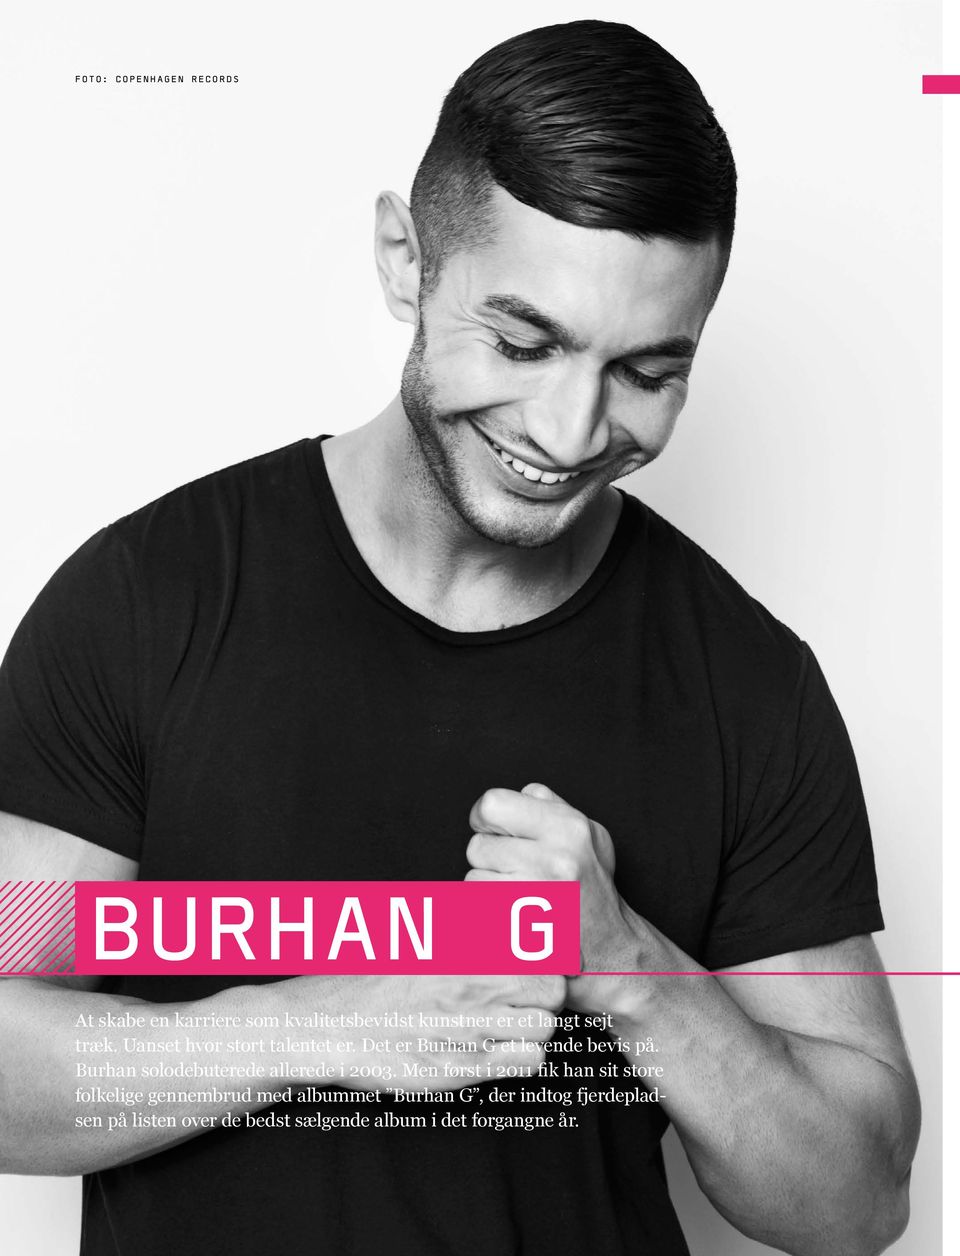 Burhan solodebuterede allerede i 2003.